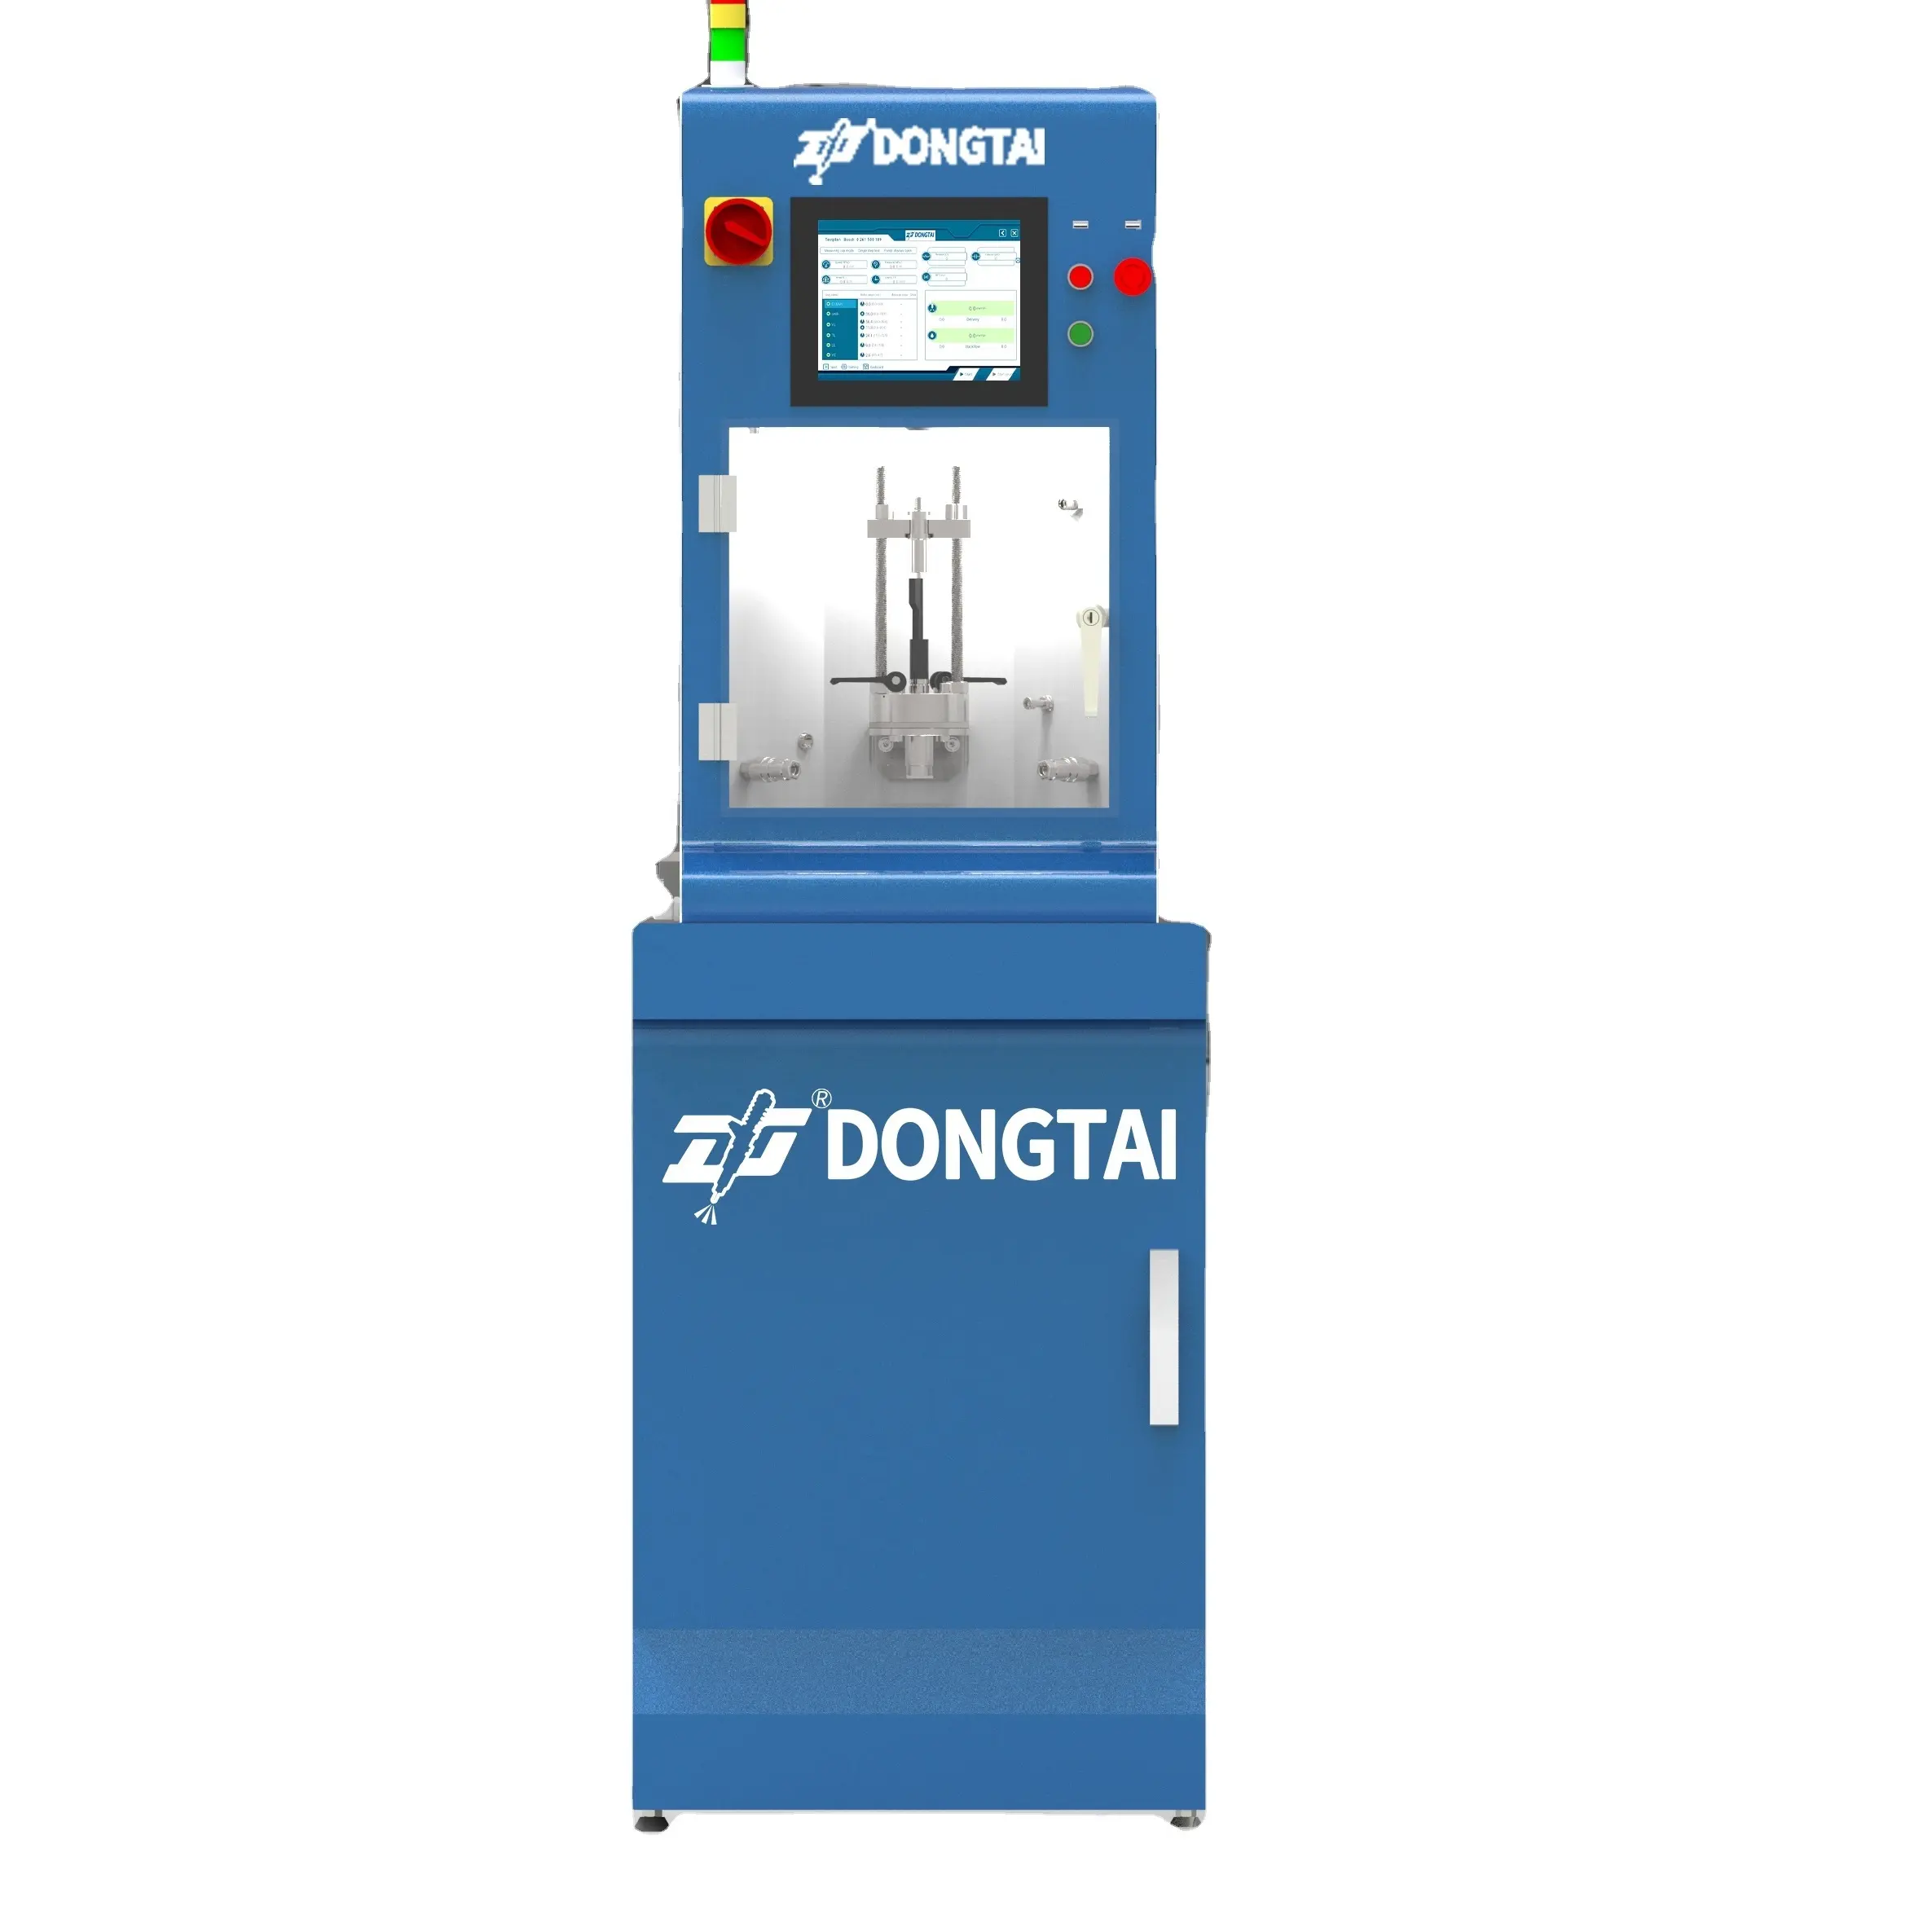 पेट्रोल प्रत्यक्ष इंजेक्टर DongTai Excaliur GDI मास्टर